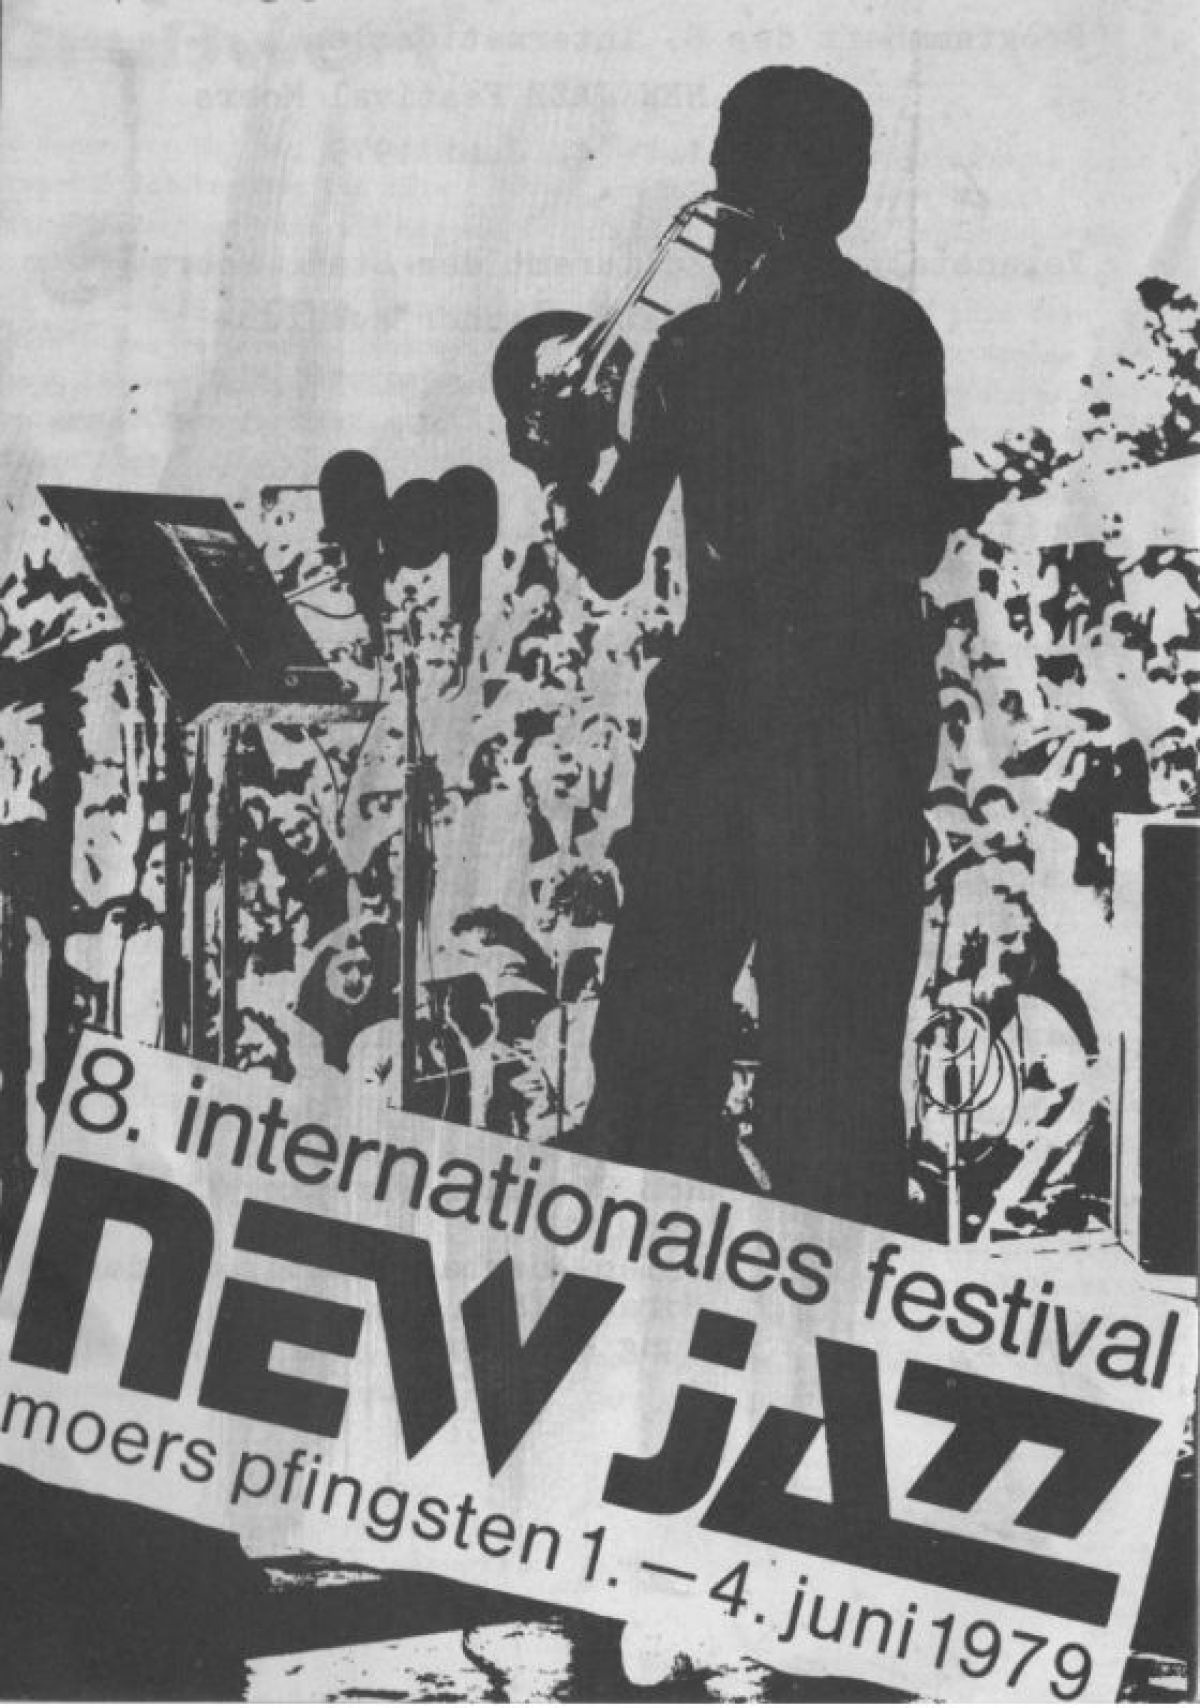 Festival-Plakat 1979